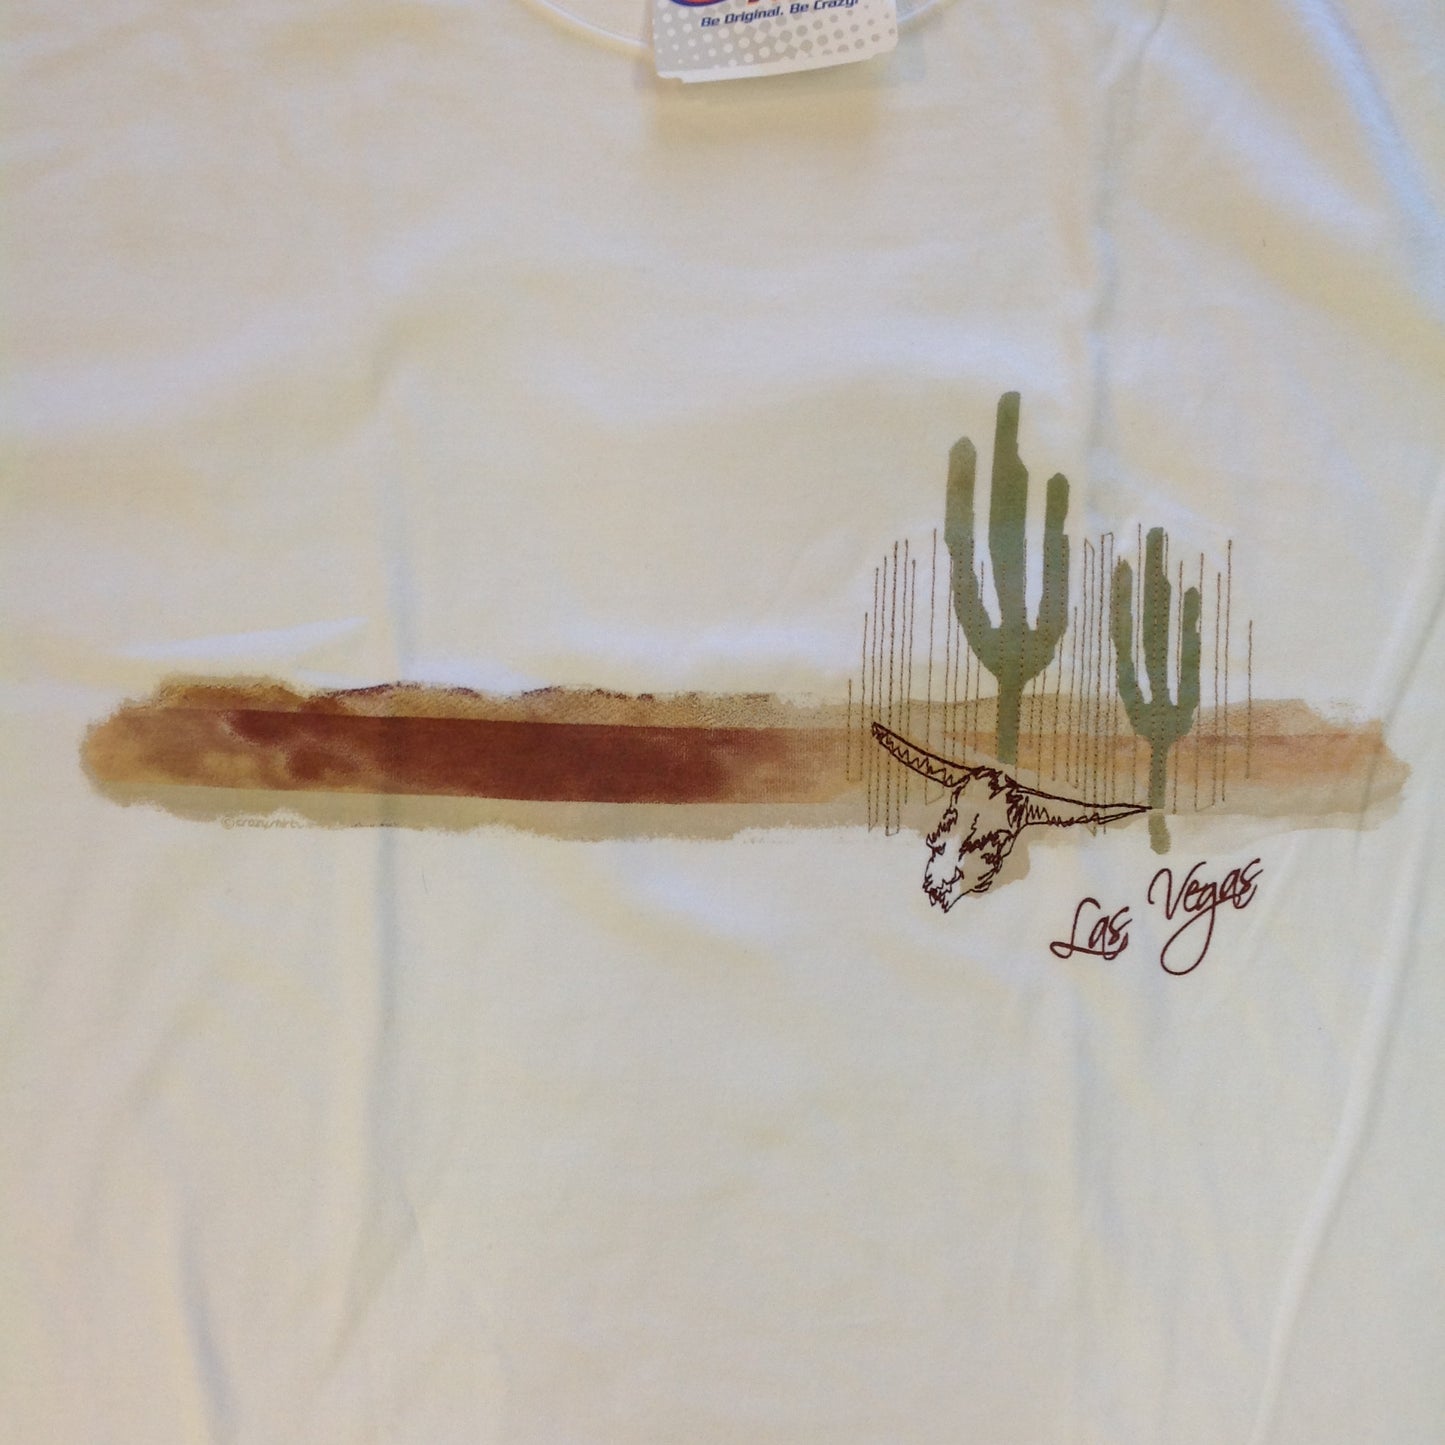 CrazyShirts Men's XL White Short Sleeve Las Vegas Deserted Souvenir T-Shirt with Tags